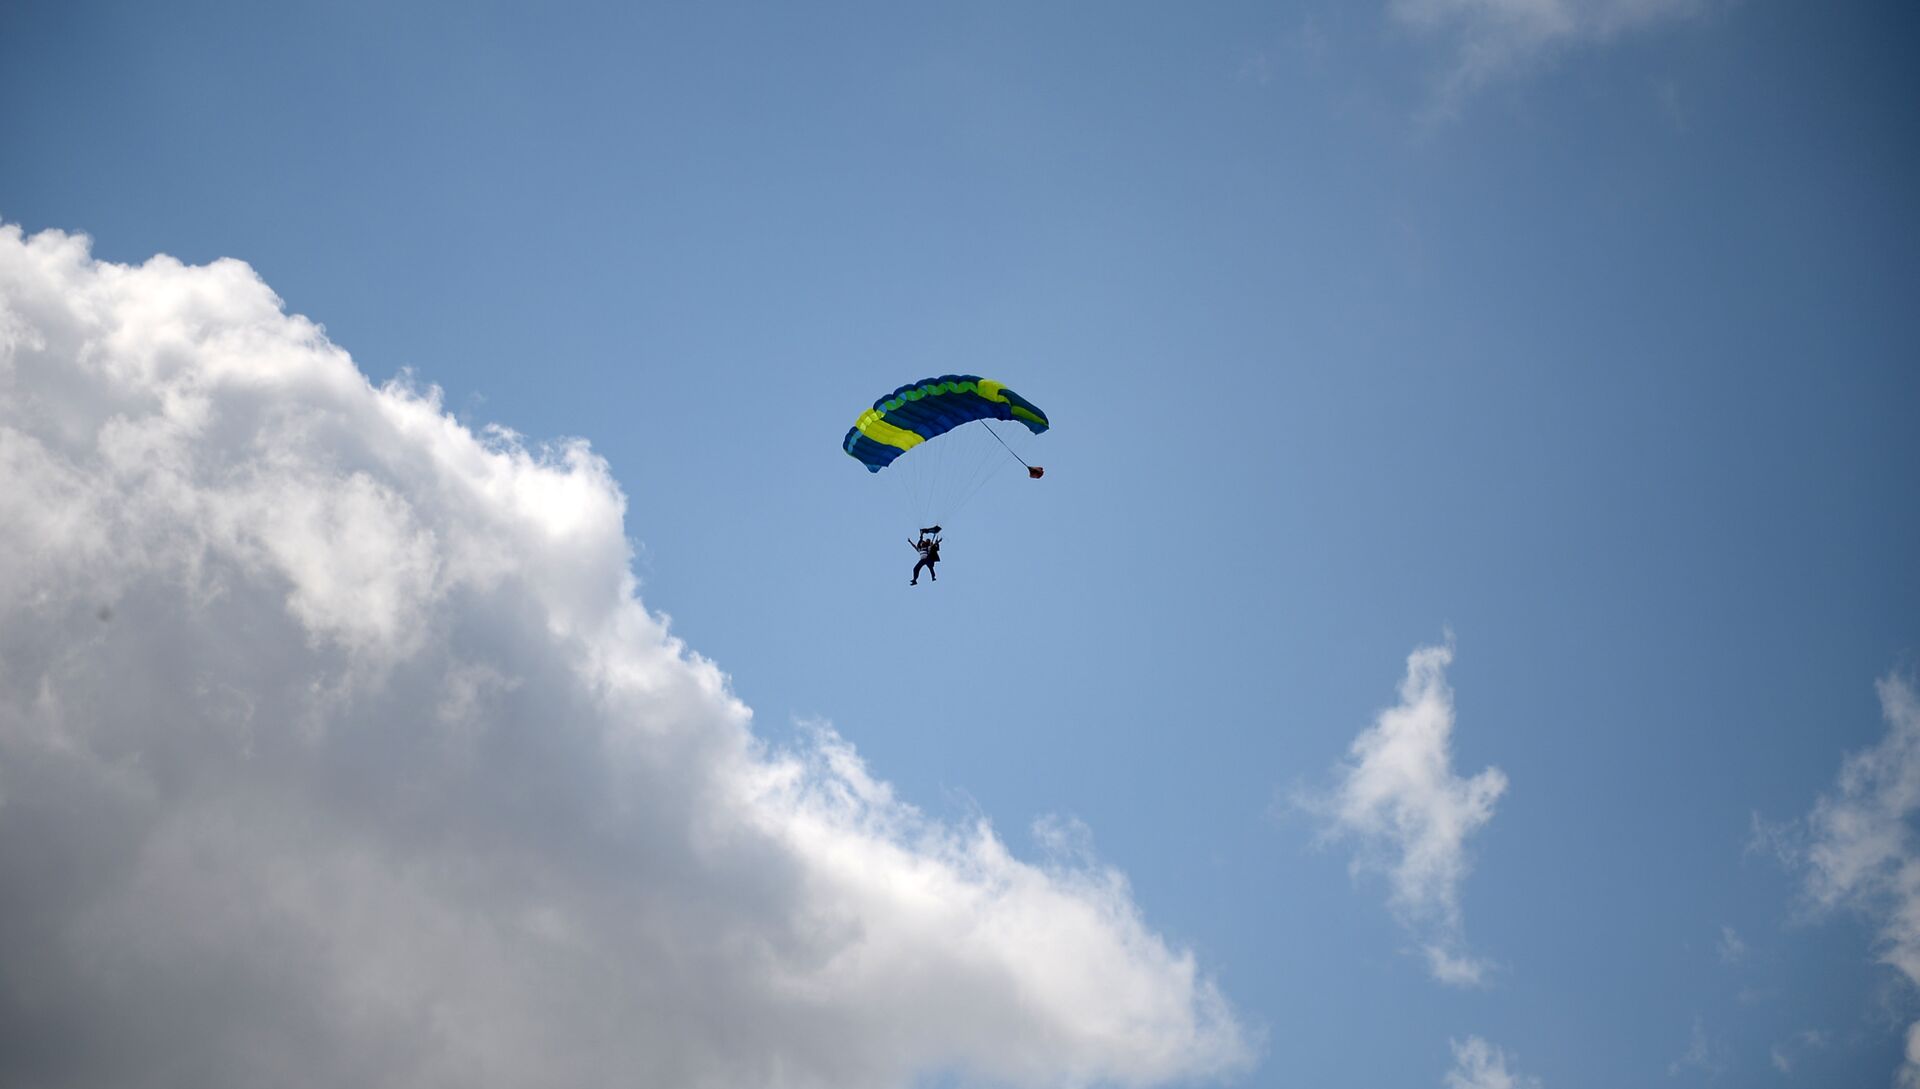  Севастопольцы с ограниченными физическими возможностями прыгнули с парашютом в рамках проекта Мне бы в небо  - РИА Новости, 1920, 05.10.2020